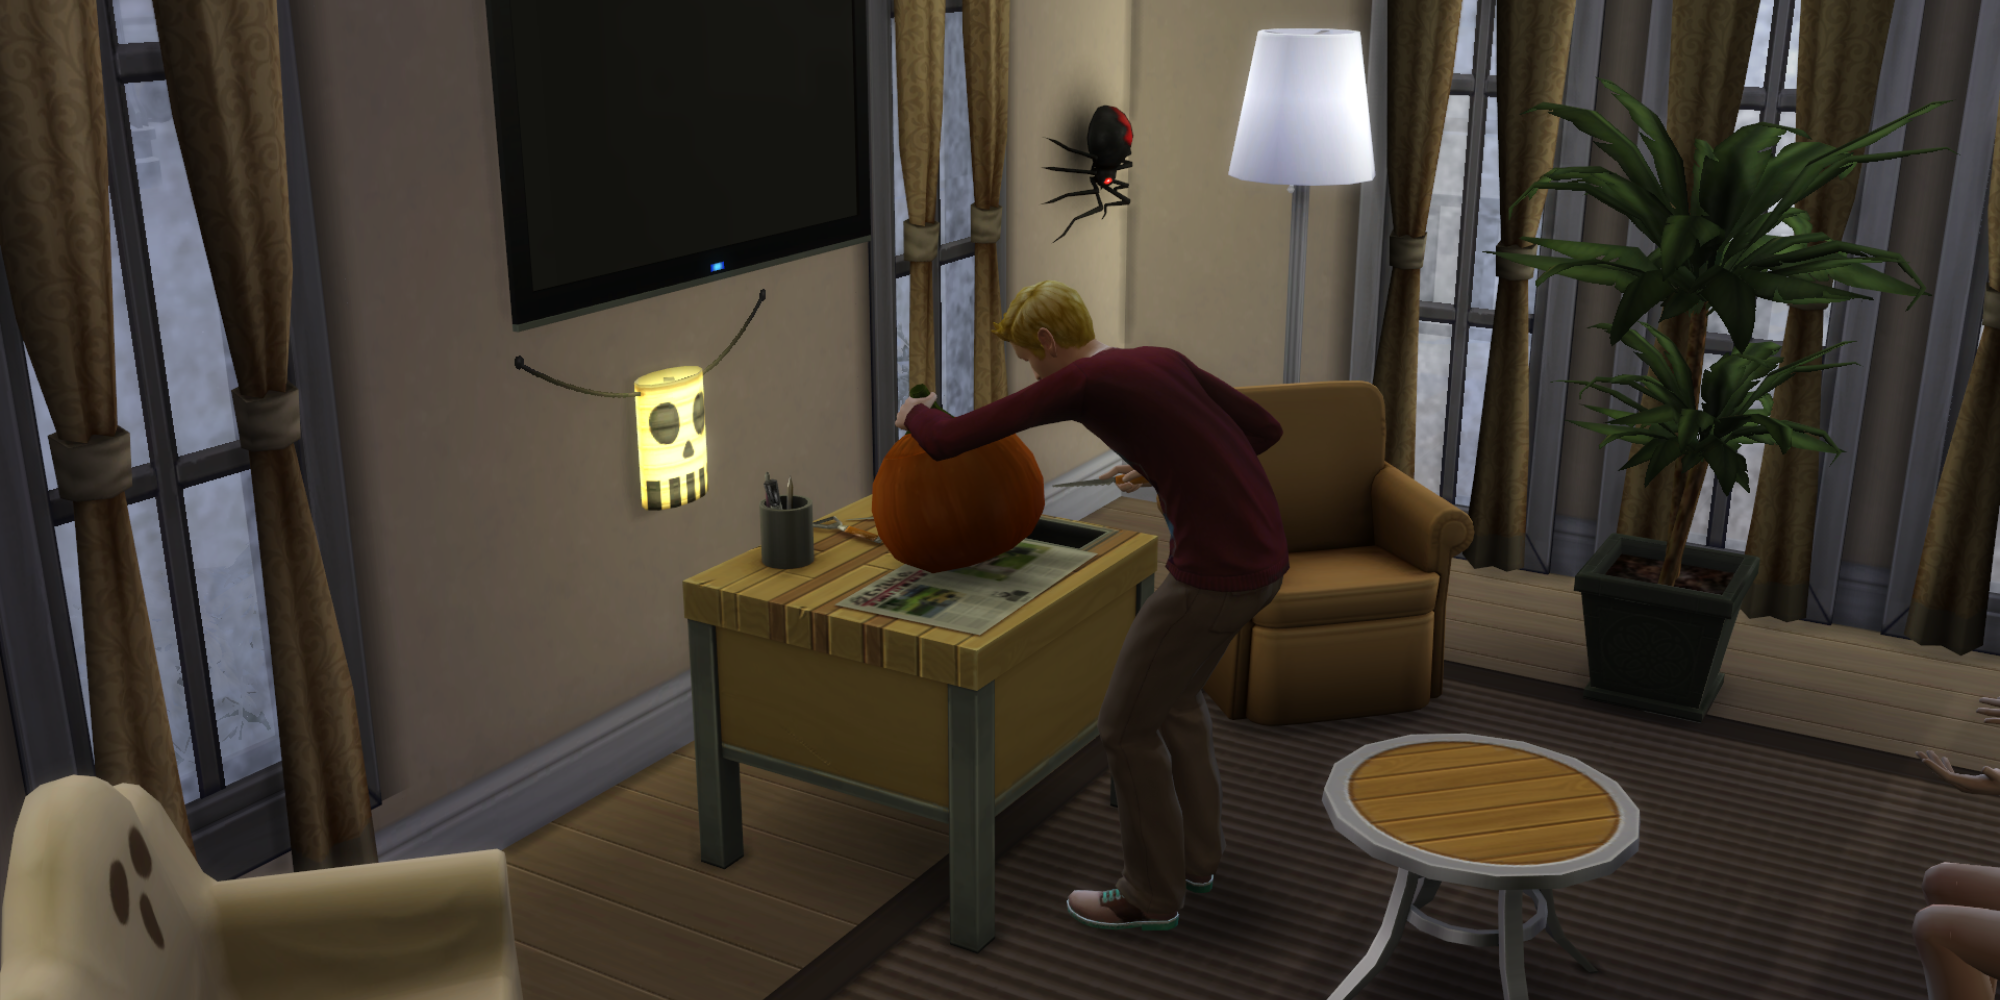 A Sim carves a pumpkin